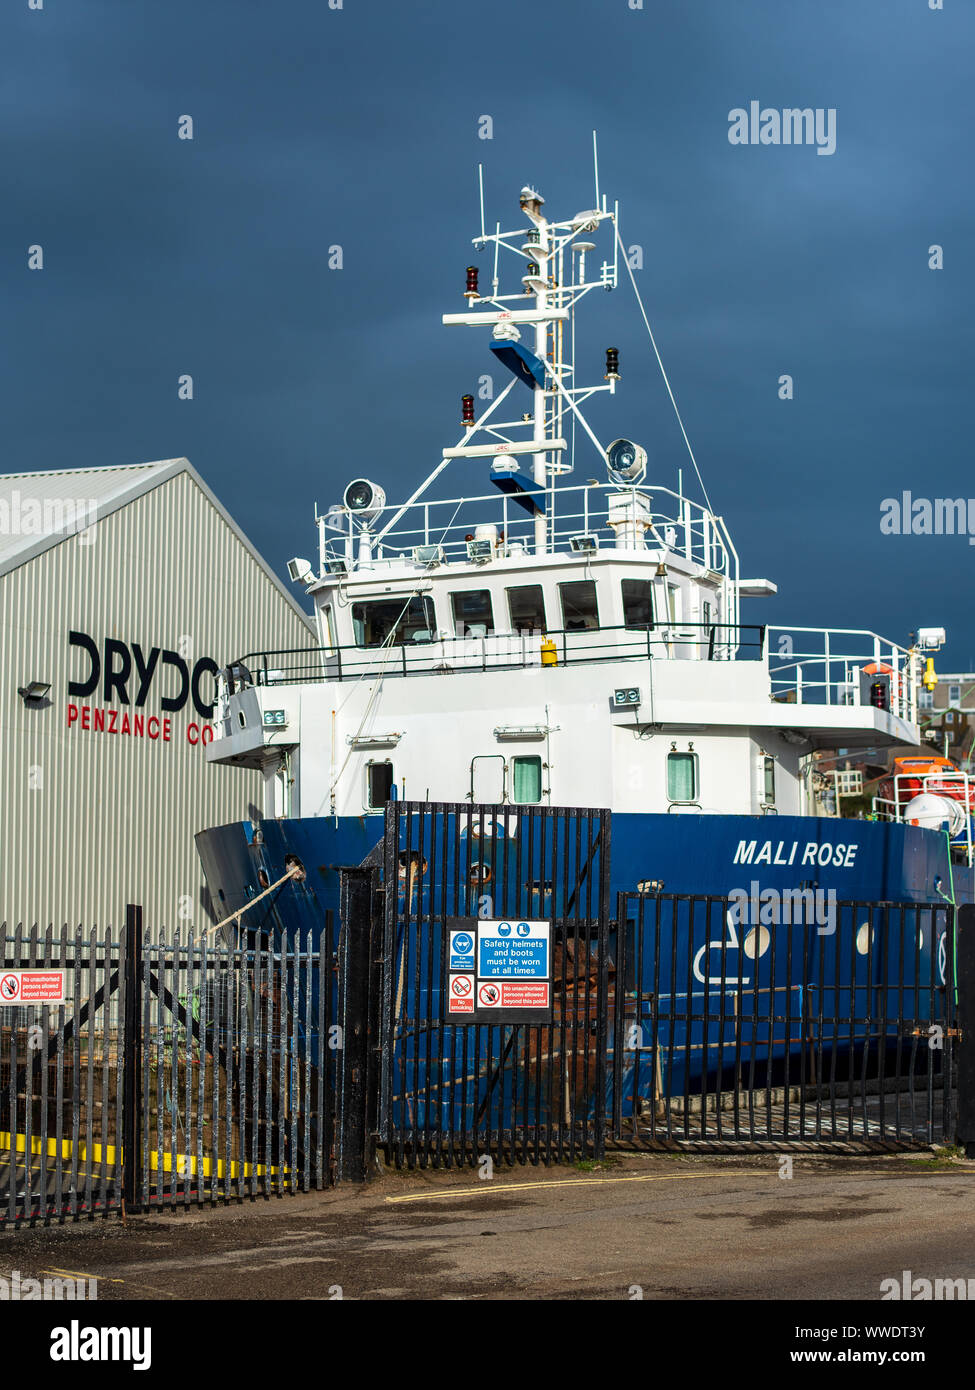 Penzance cale sèche. Îles Scilly Steamship Group freight ship Le Mali est passé en cale sèche à Penzance, Cornwall UK Dry Dock. Dry Dock créé en 1815. Banque D'Images